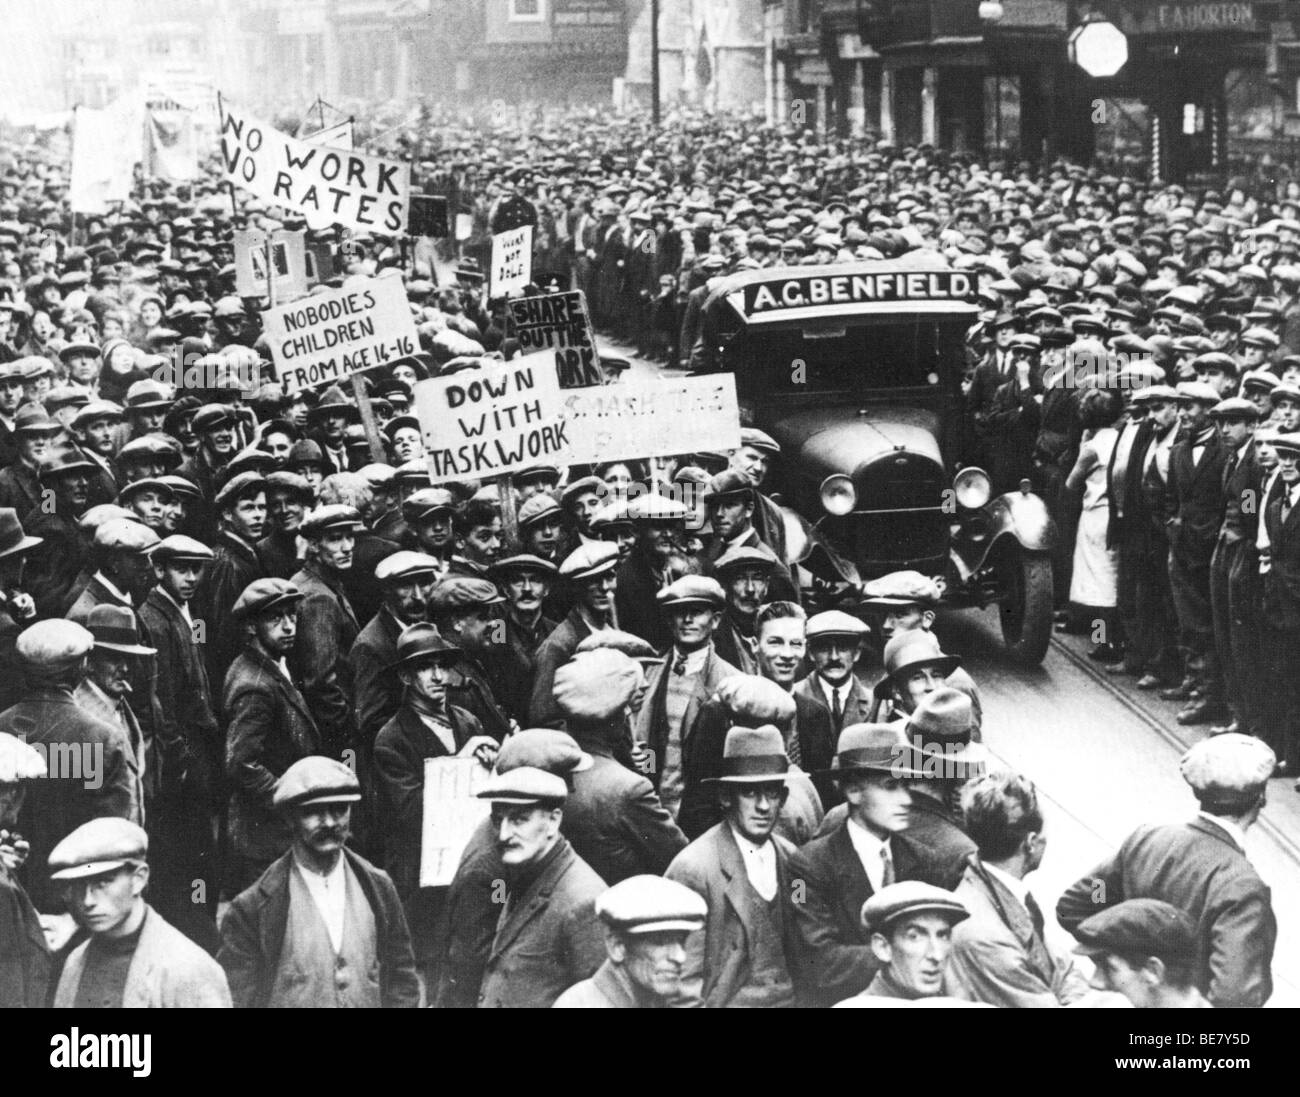 Les quais de Southampton en 1932 protester contre les conditions d'emploi de ceux qui ont la chance d'avoir un emploi Banque D'Images